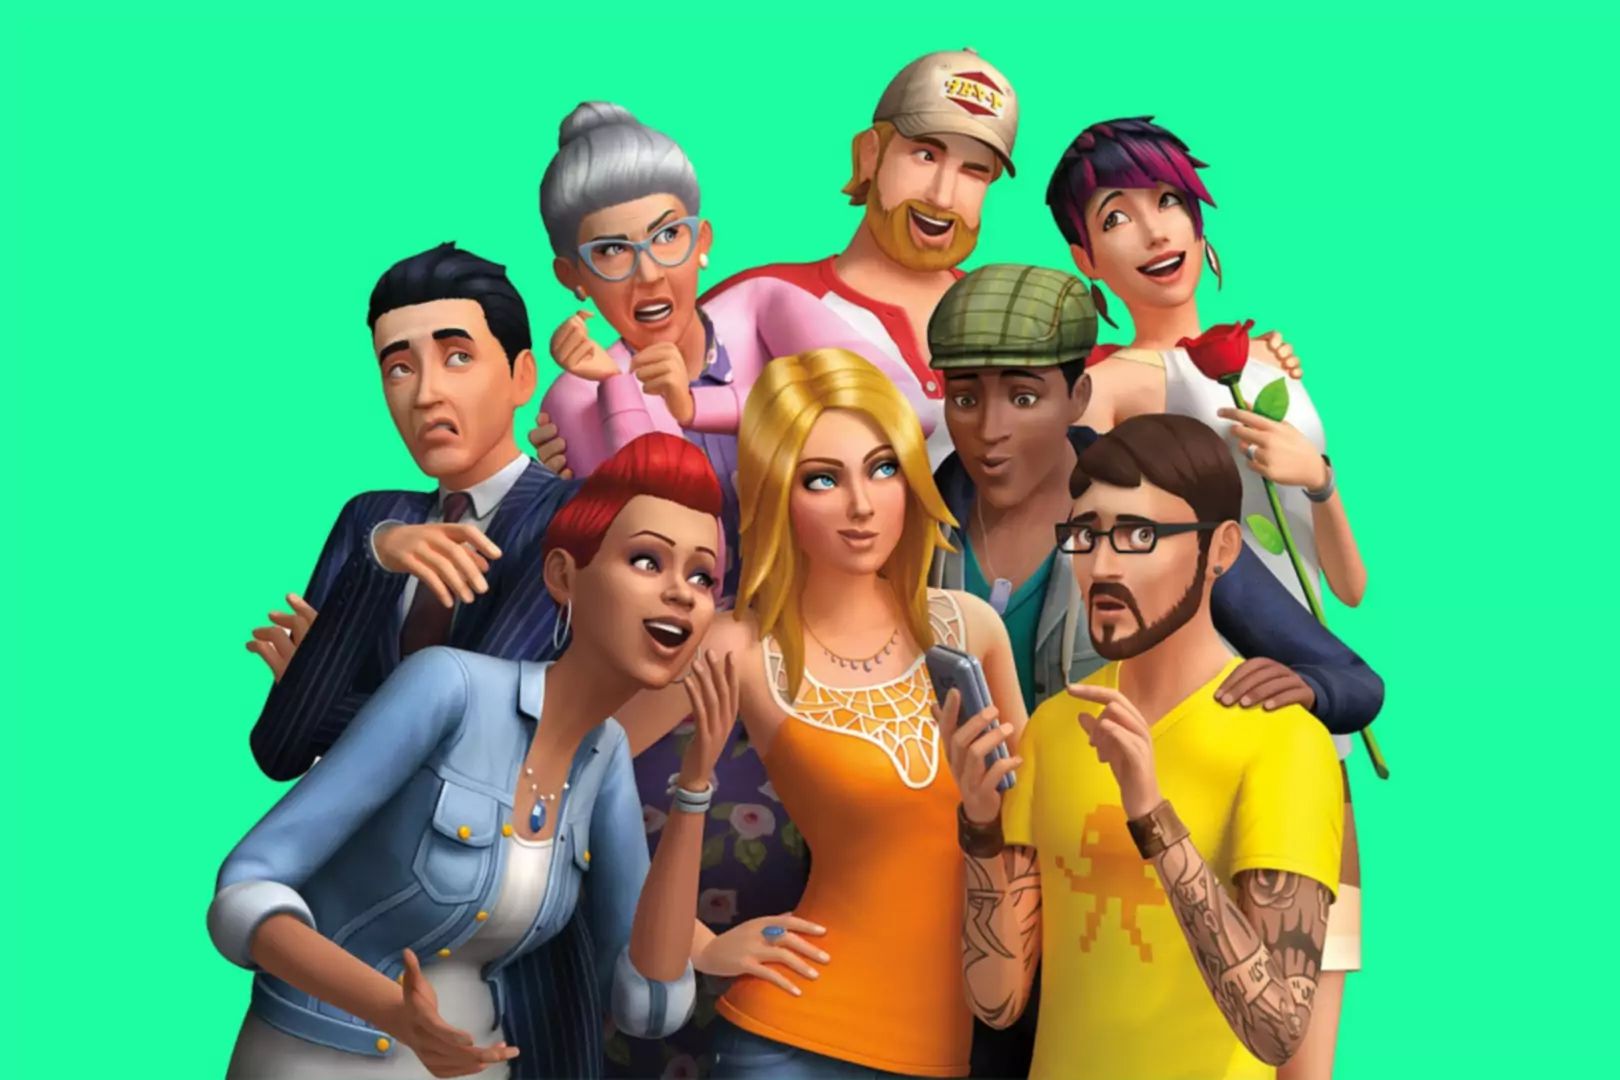 Simsovi liki CGI pozirajo skupaj in delajo neumne izraze